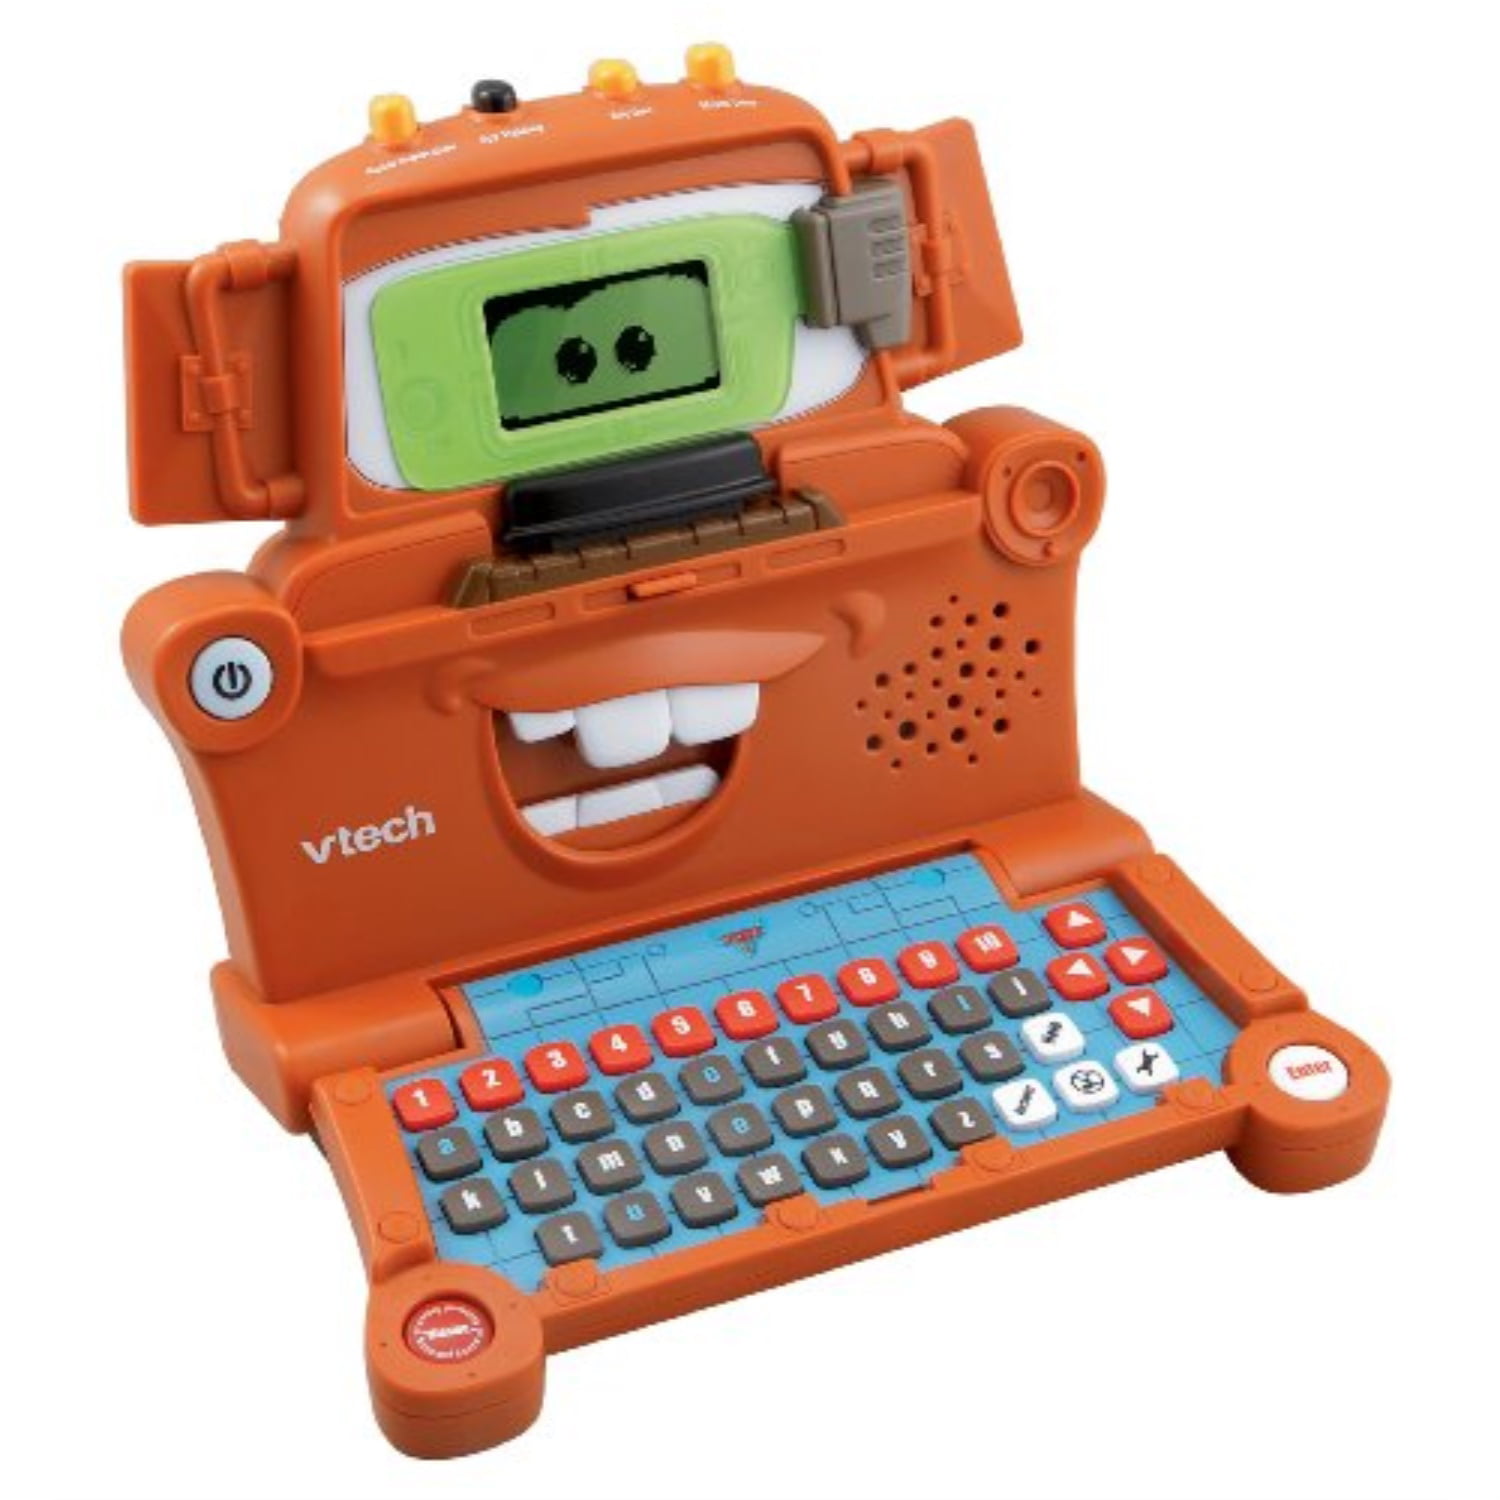 Vtech First notebook - pink EN - Children's Laptop